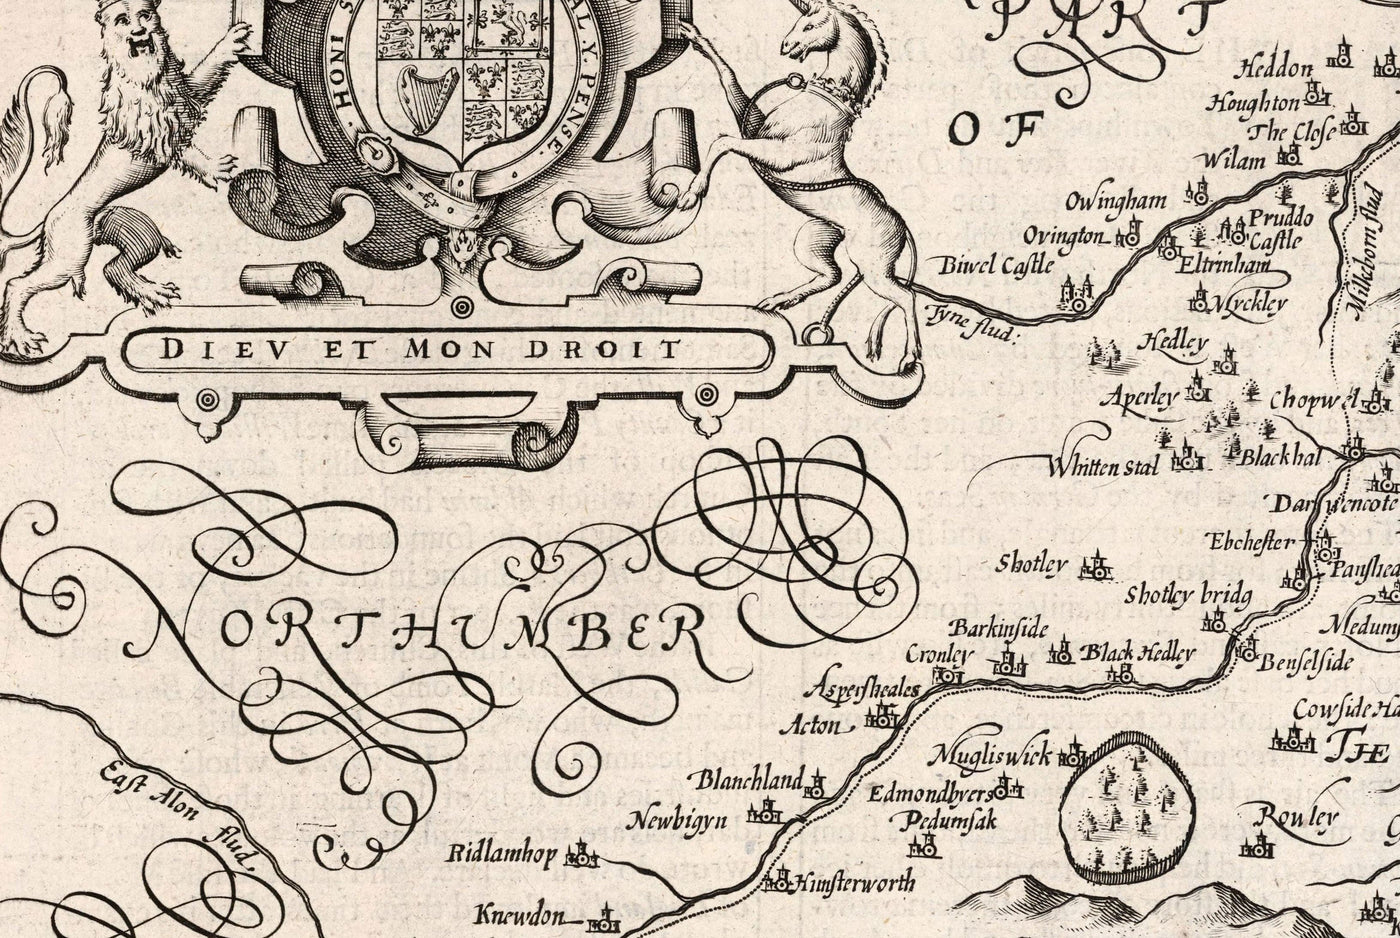 Alte monochrome Karte von County Durham, 1611 von John Speed ​​- Darlington, Stockton-On-Tees, Sunderland, Newcastle